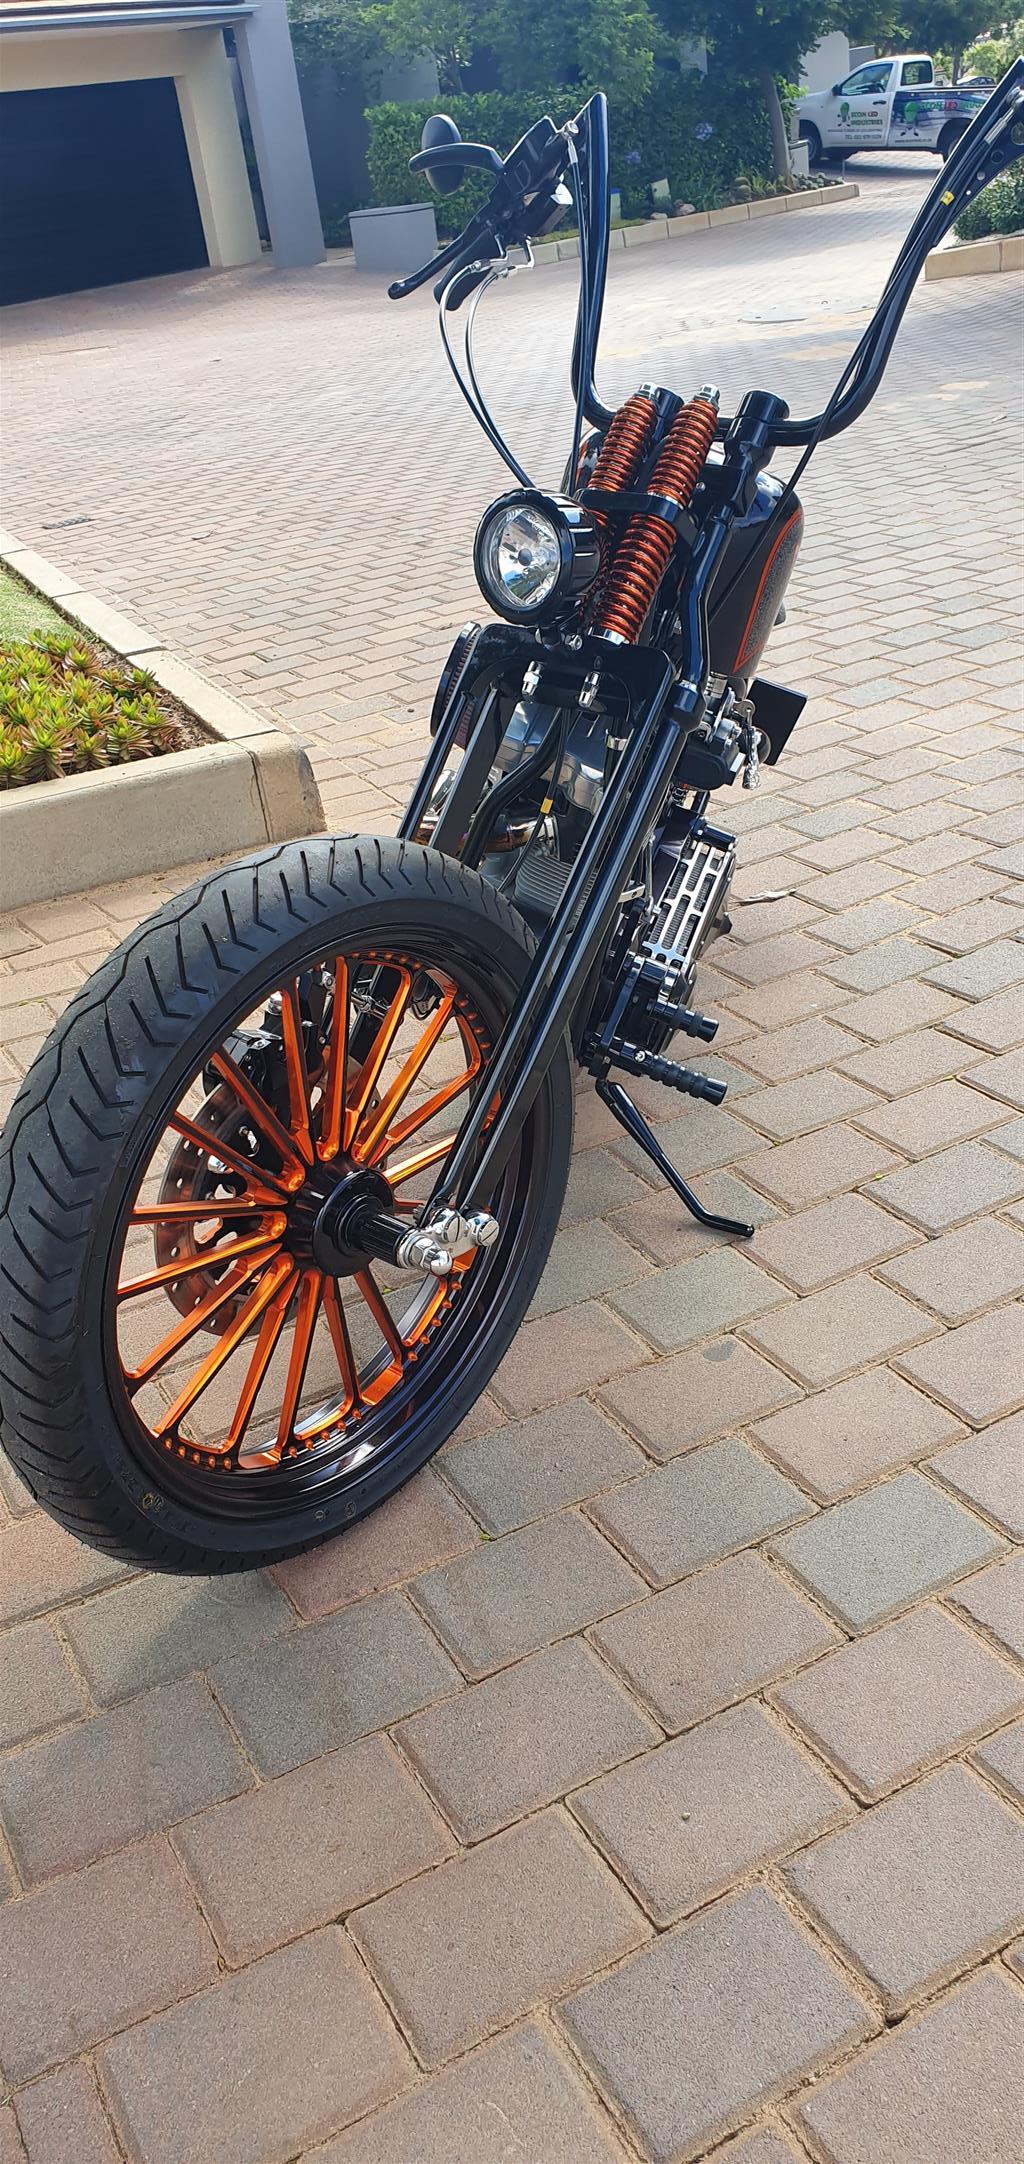 2008 Harley Davidson Custom